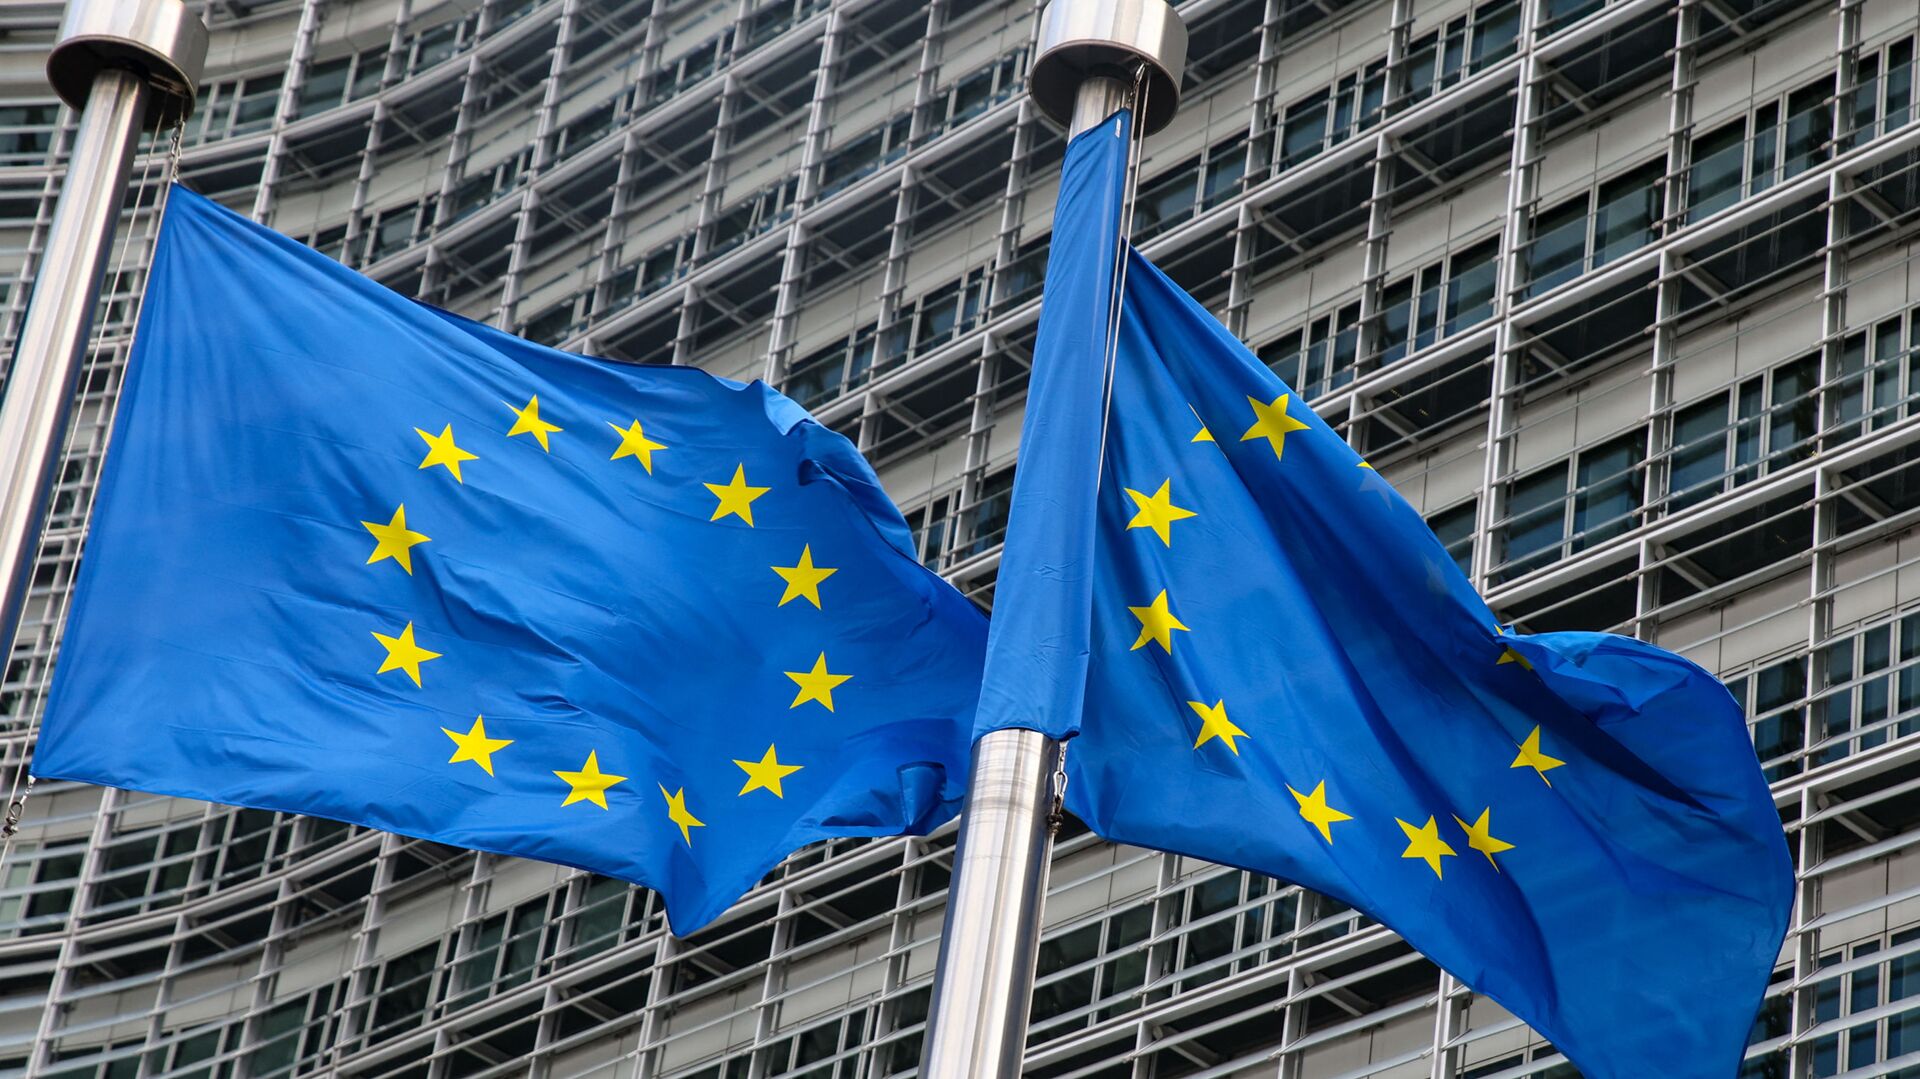 Флаги Европейского союза у штаб-квартиры Европейской комиссии в Брюсселе  - Sputnik Lietuva, 1920, 01.05.2021